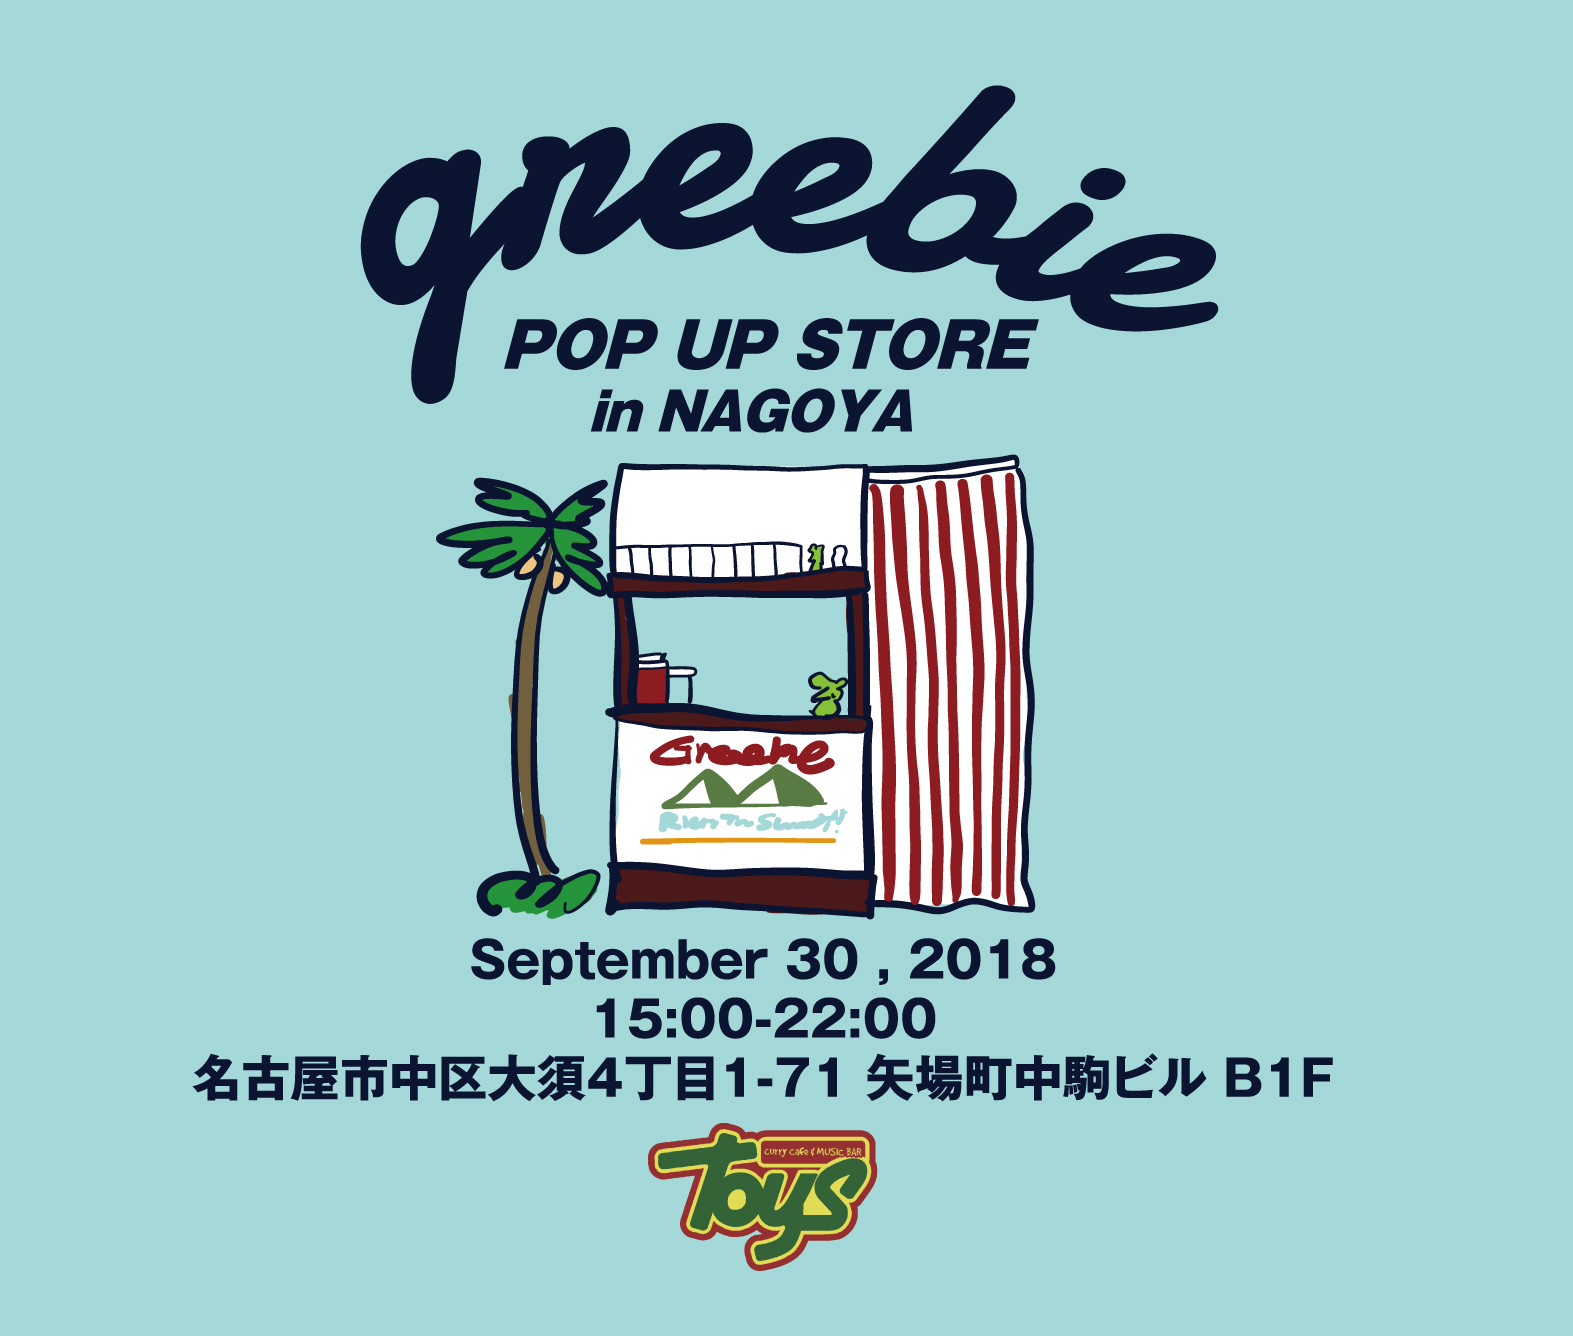 【Greebie POP UP STORE in NAGOYA】